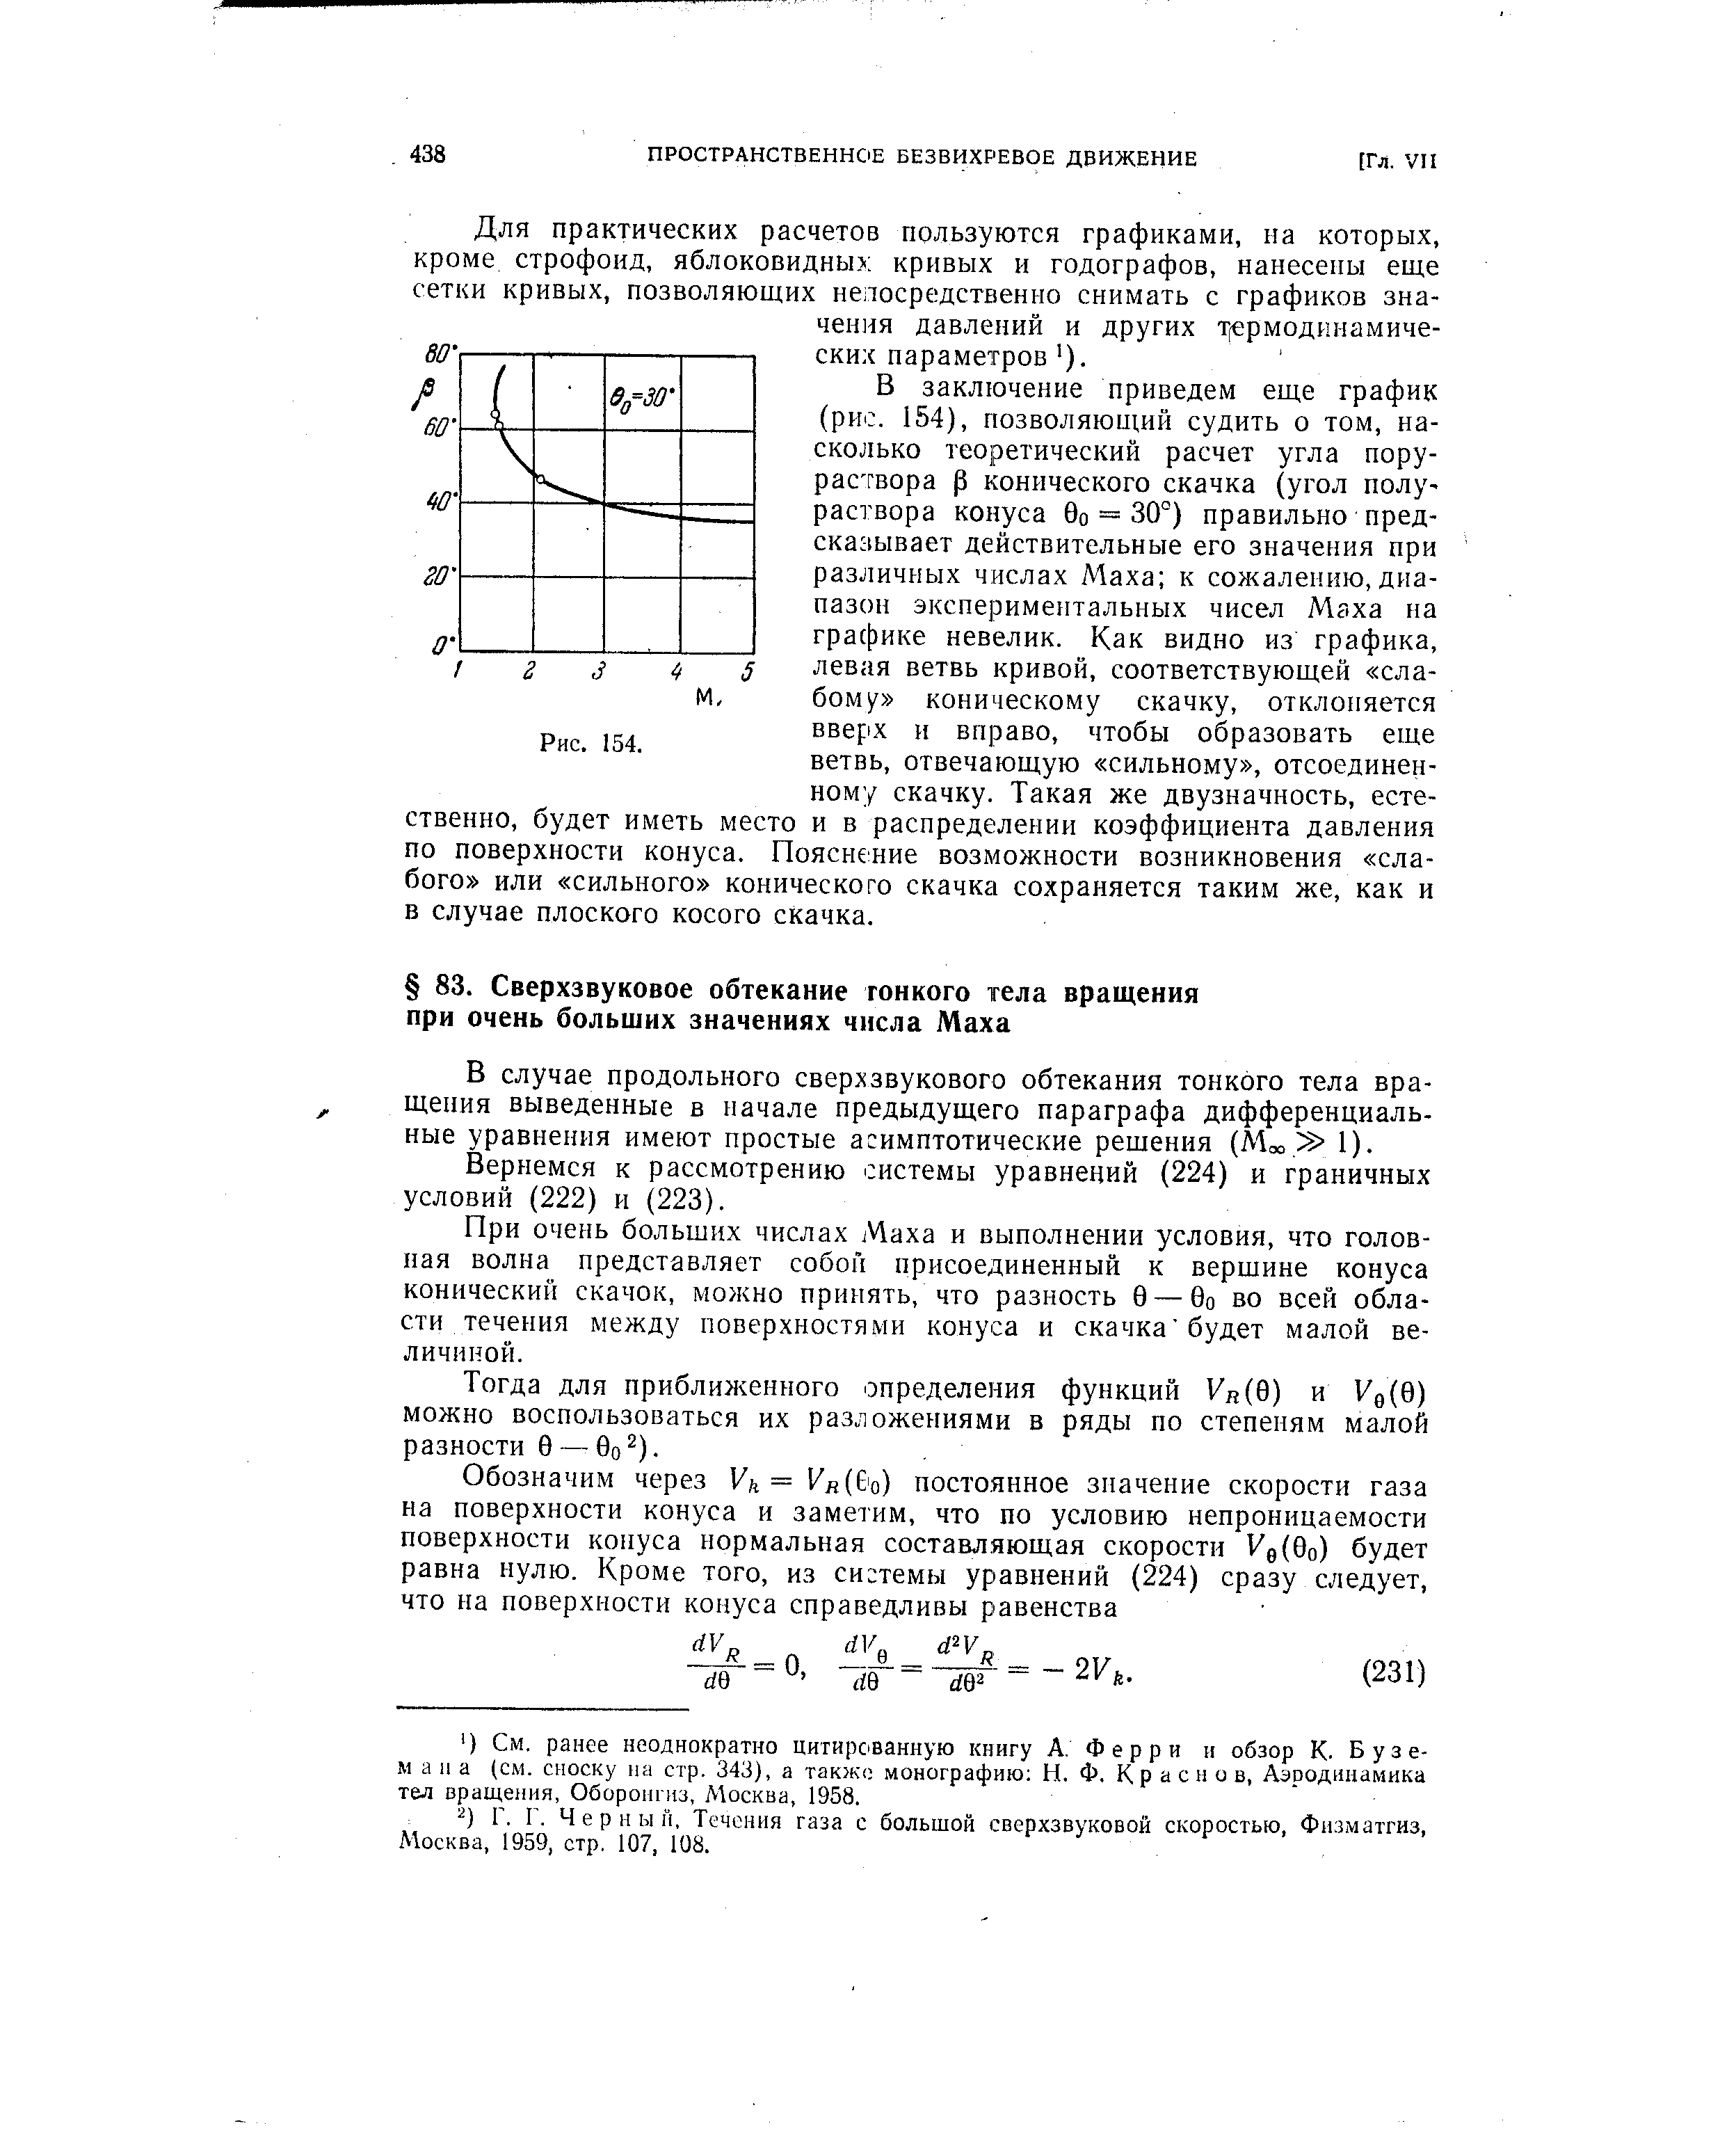 В случае продольного сверхзвукового обтекания тонкого тела вращения выведенные в начале предыдущего параграфа дифференциальные уравнения имеют простые асимптотические решения (Мс . 1).
